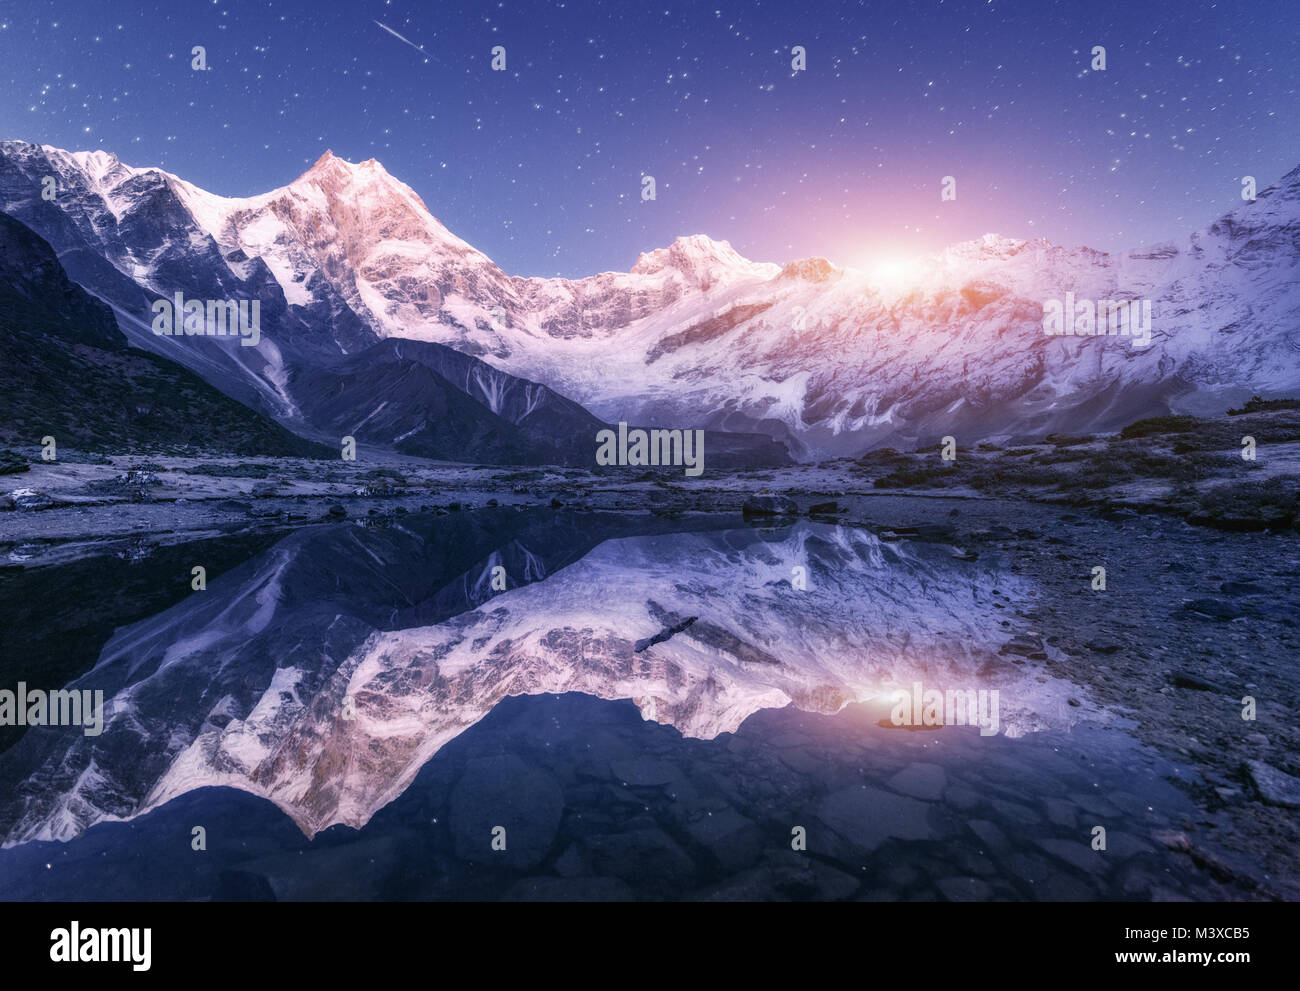 Scène de nuit avec des montagnes de l'himalaya et lac de montagne à la nuit étoilée au Népal. Paysage avec de hautes roches avec pic enneigé et le ciel avec des étoiles et de la lune Banque D'Images